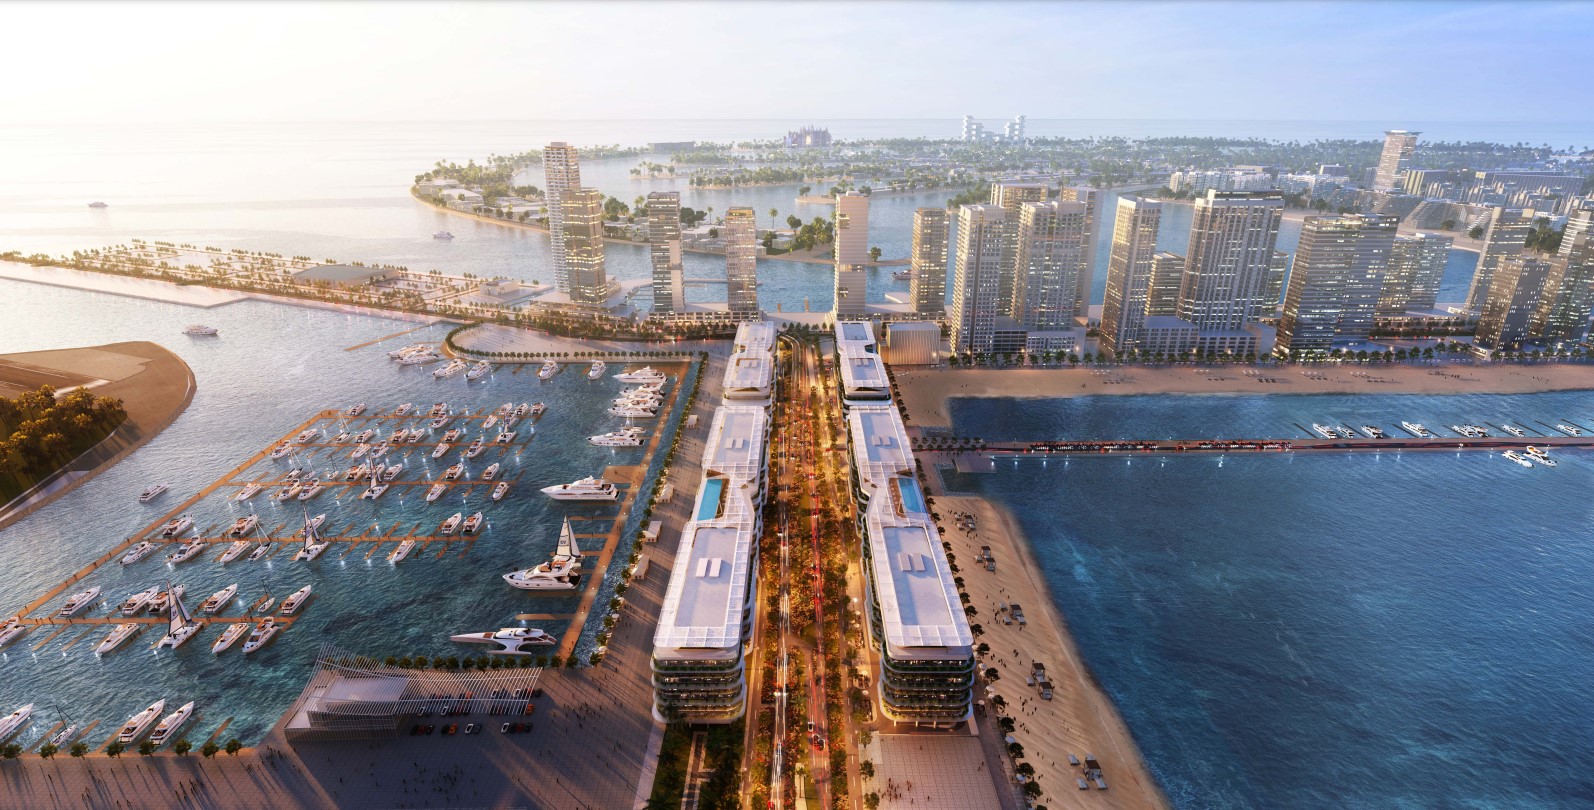 Gallery Dubai Harbour Residences